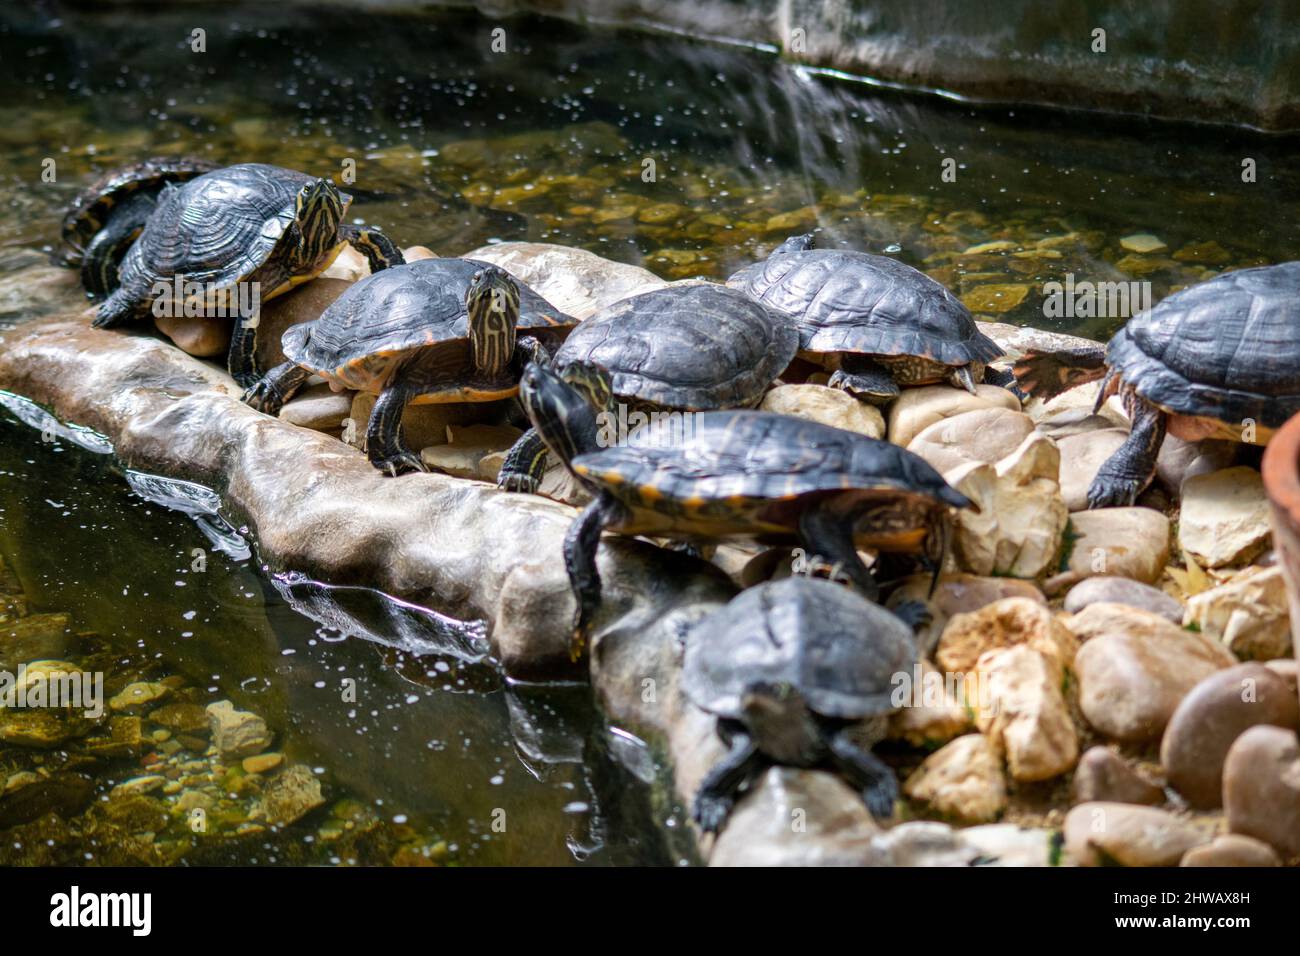 Die Gruppe der gemalten Schildkröten (Chrysemys picta) ist die am weitesten verbreitete einheimische Schildkröte Nordamerikas. Sie lebt in langsam sich bewegenden Süßgewässern. Stockfoto